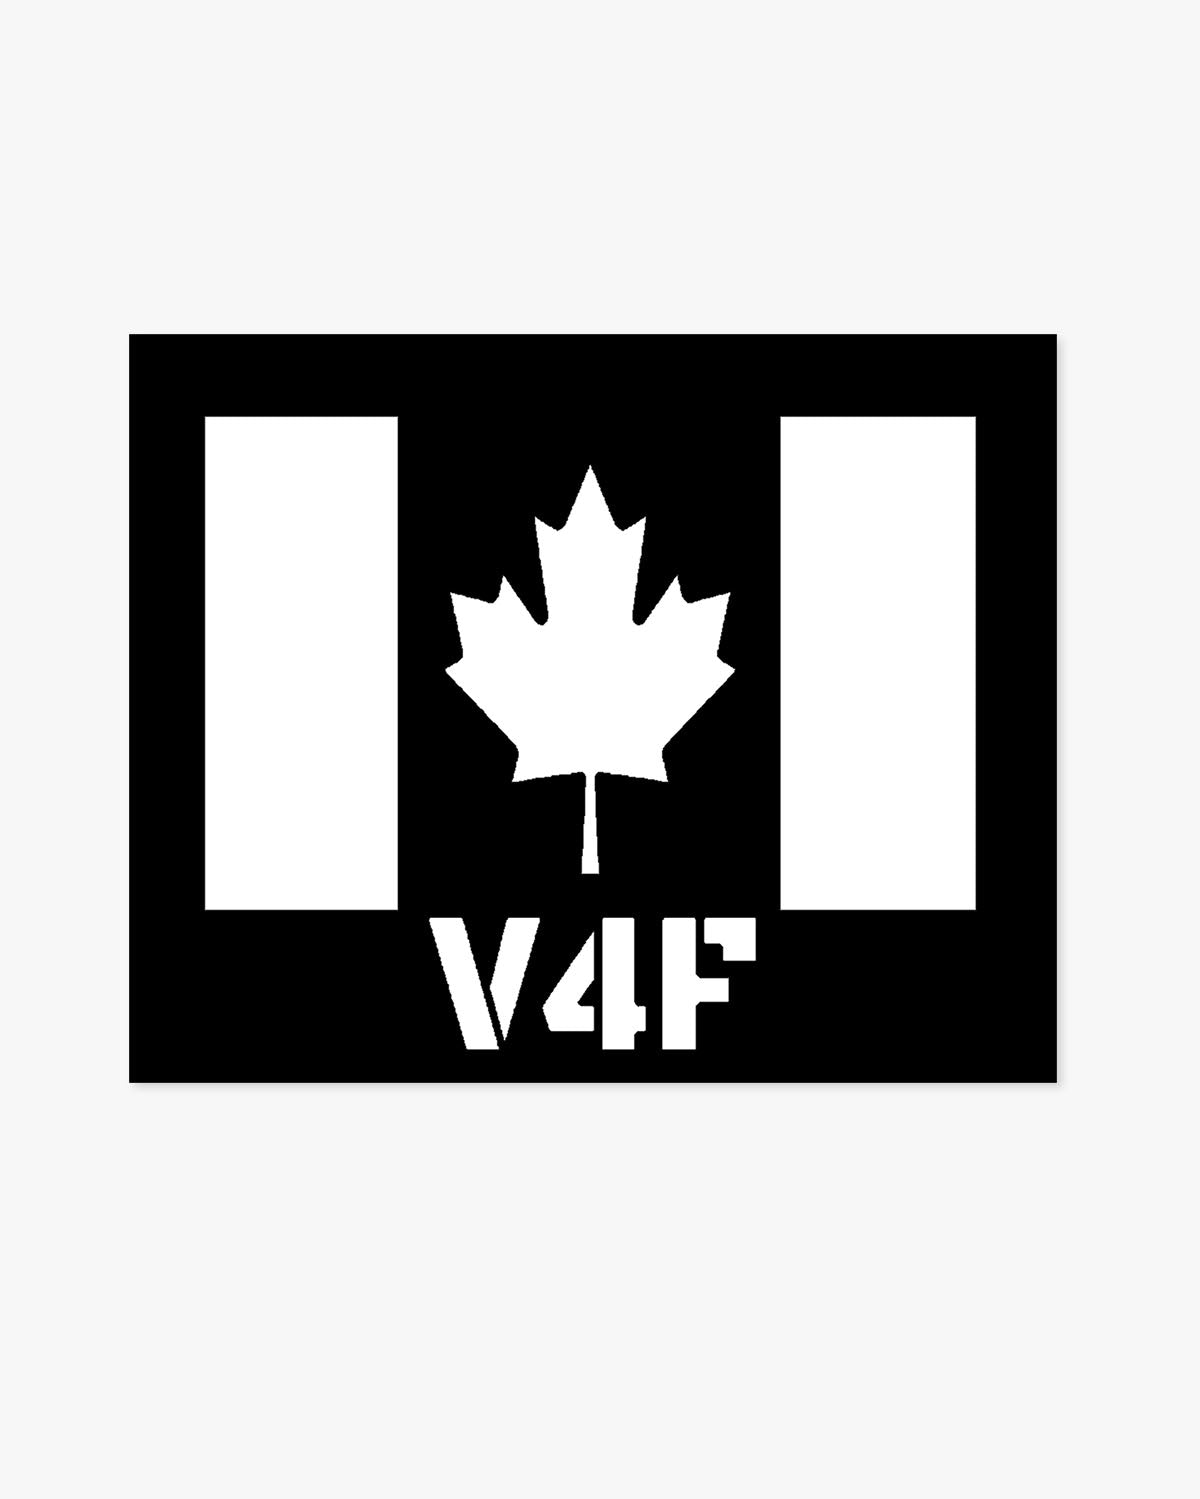 V4F w/Canada Flag Car Decal